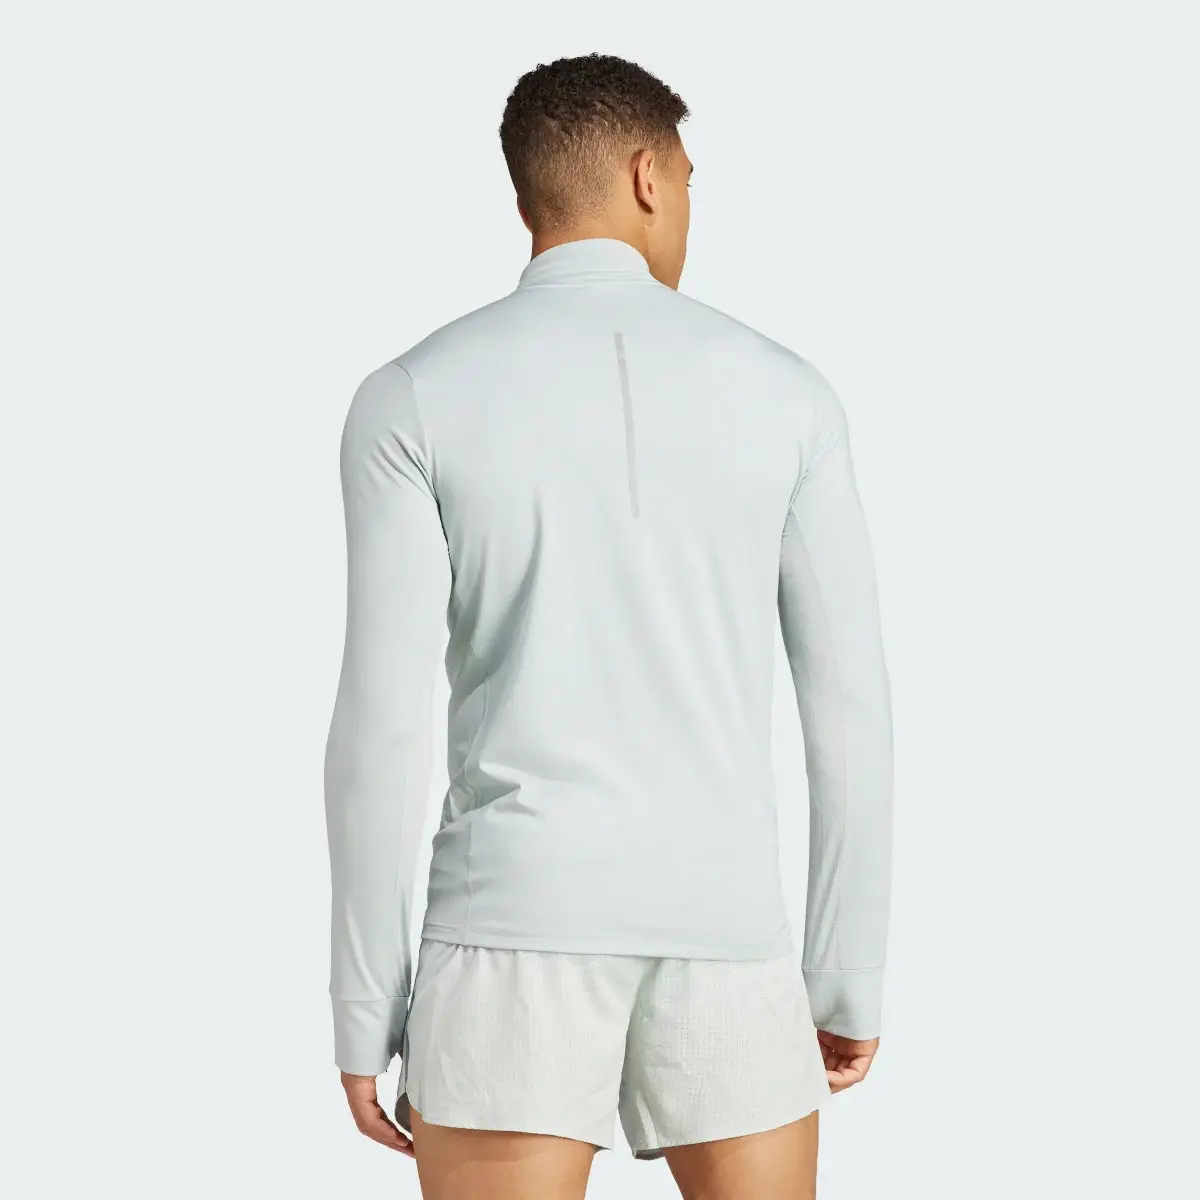 Adidas Koszulka Ultimate Long Sleeve. 3